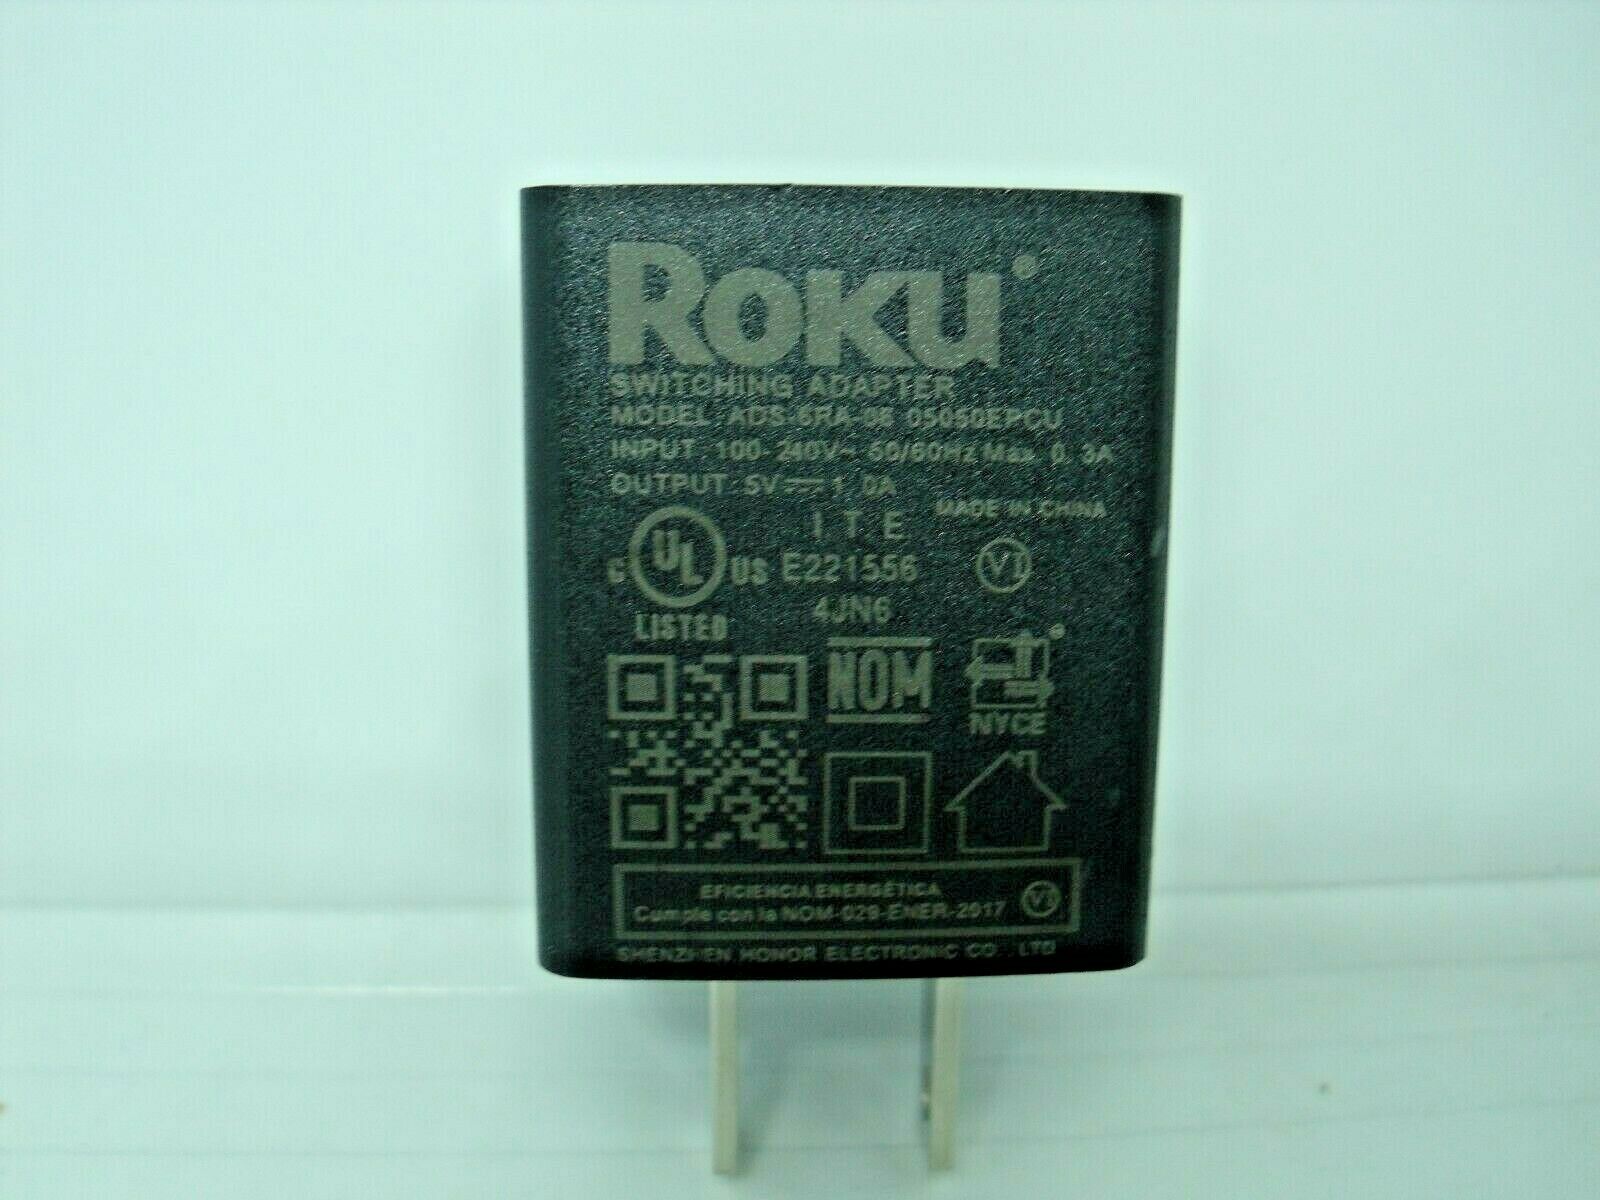 AC DC Power Adapter Roku 5.0V 1.0A (no Cable) ADS-6RA-06 Lot of 2 USA SELLER input：100-240v 50-60hz, 0.25a output: 5